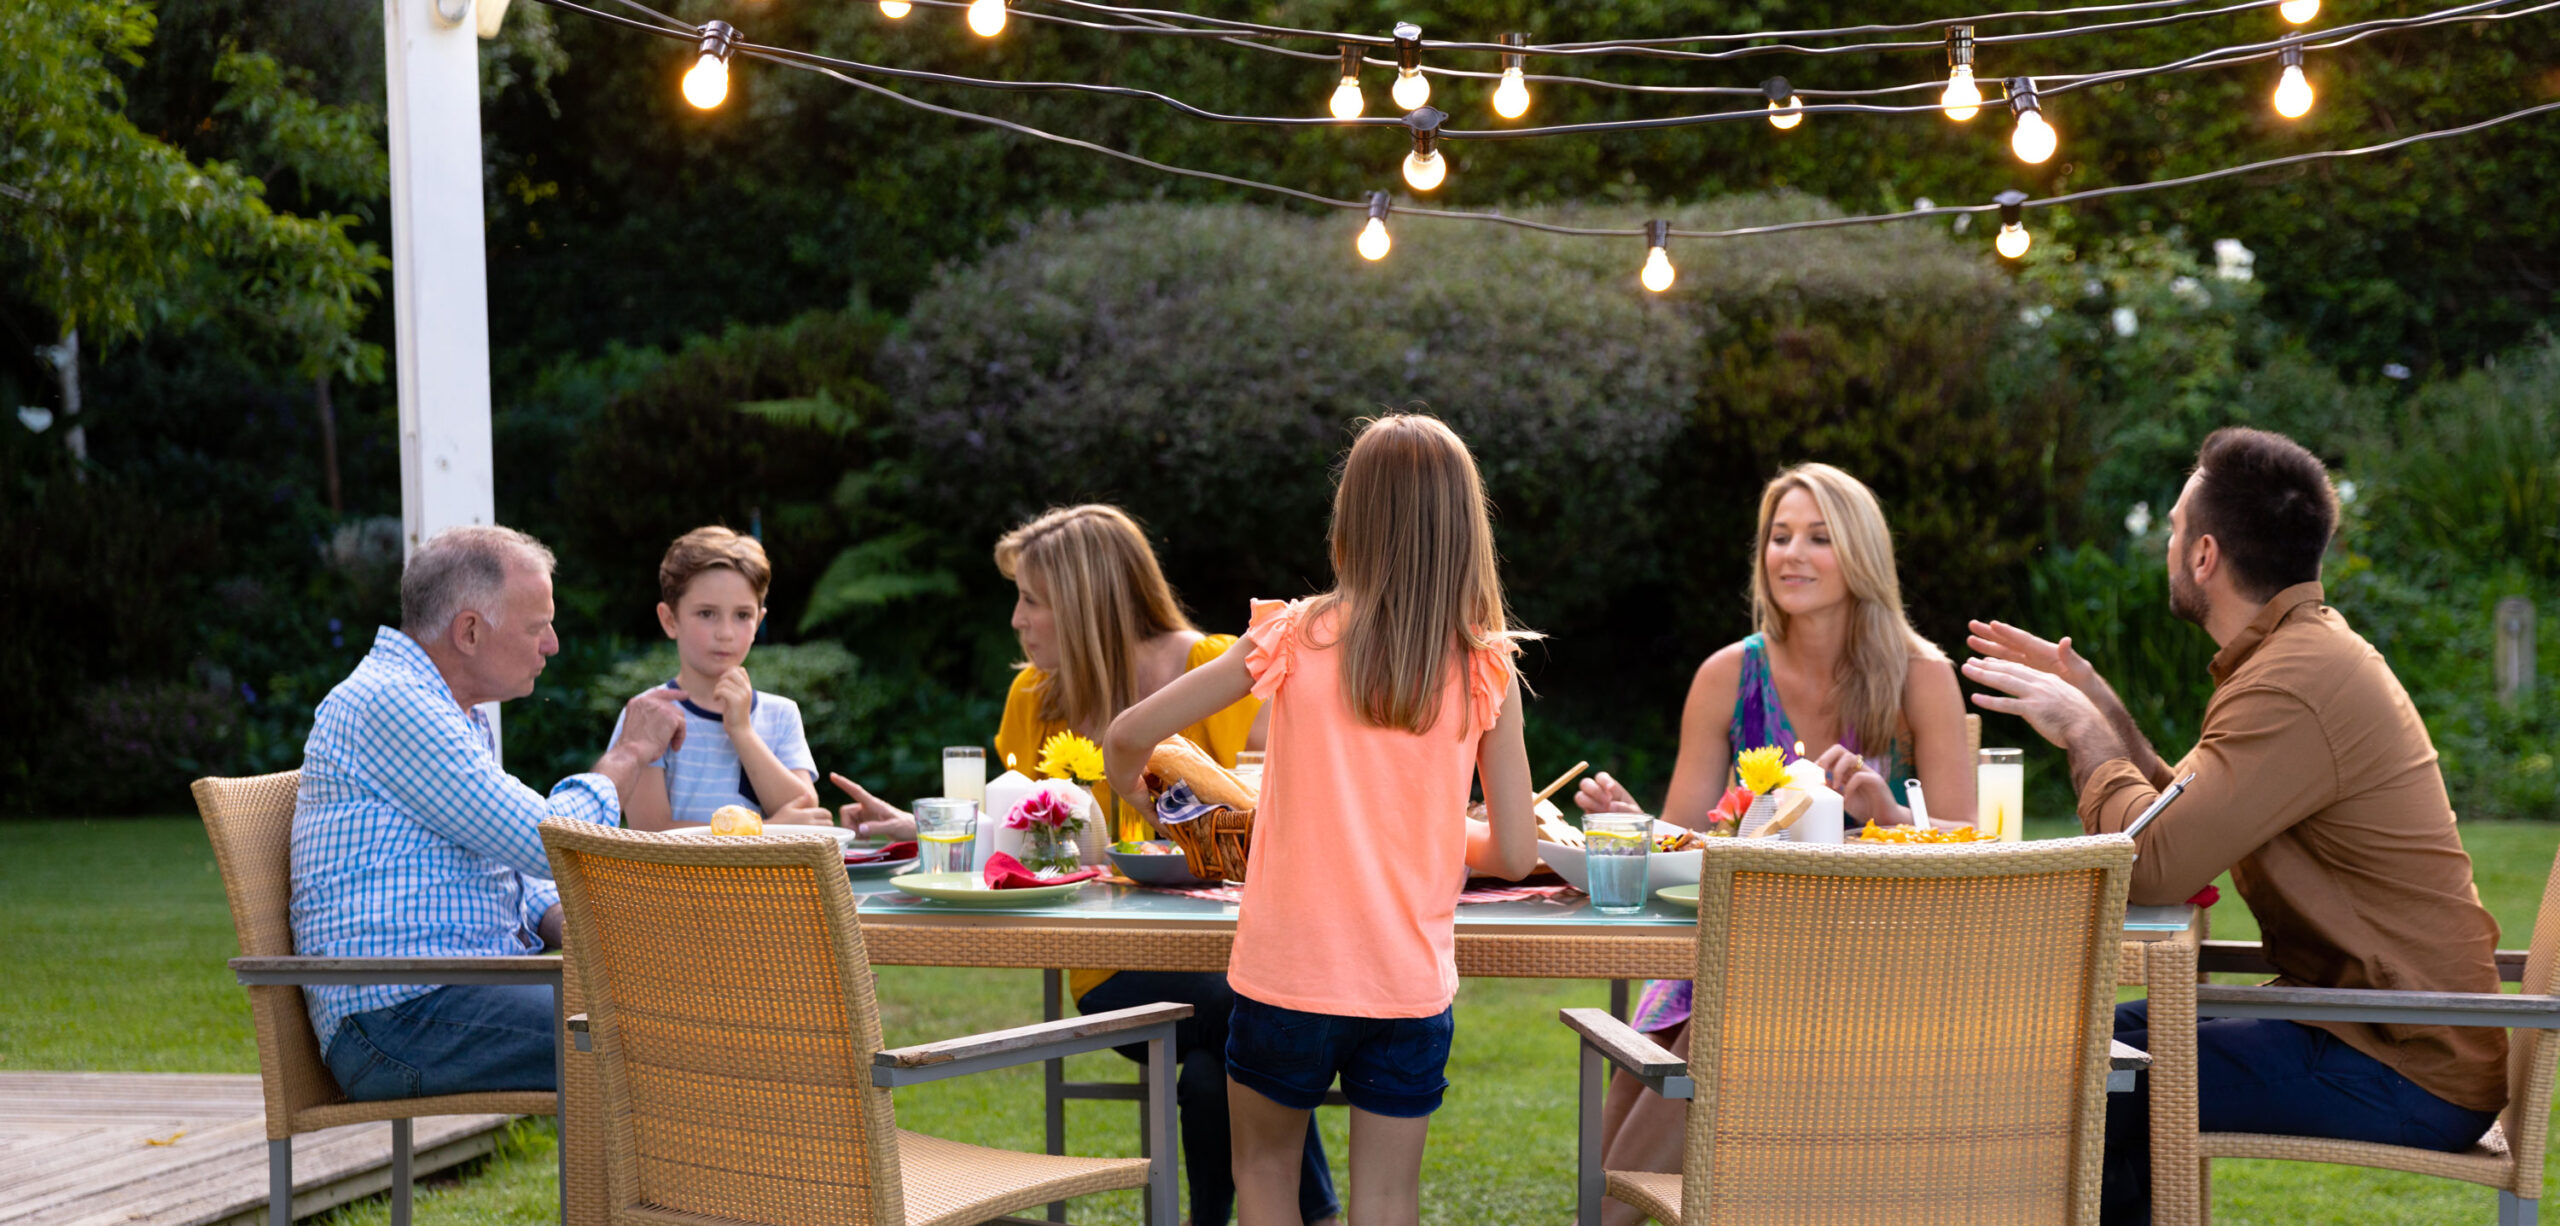 Famille dans un jardin prenant le repas éclairage